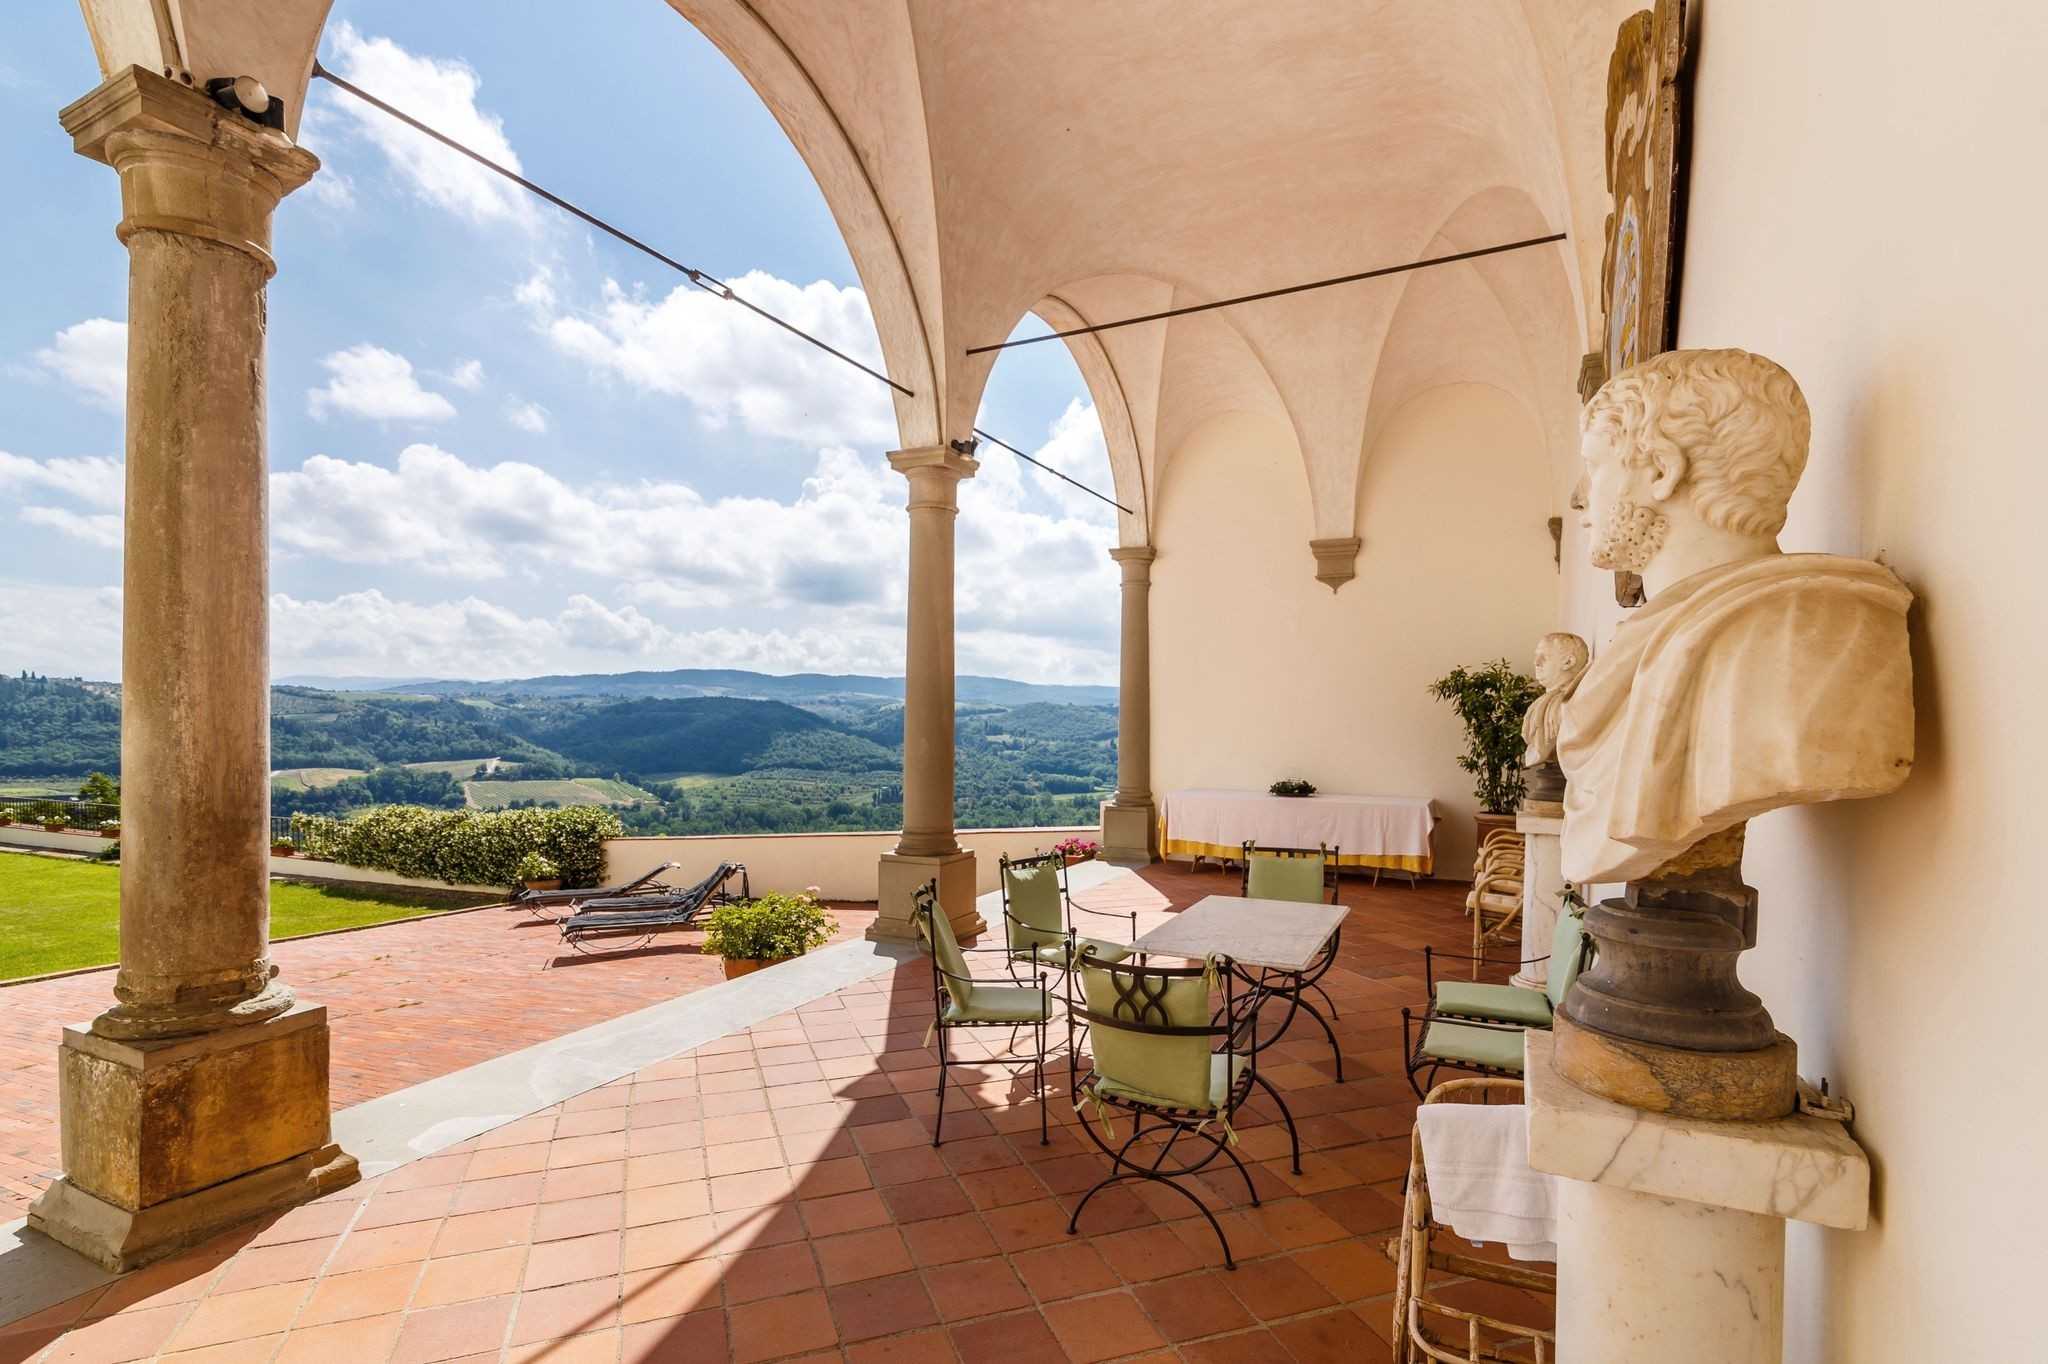 Photos Impressionnant château près de Florence